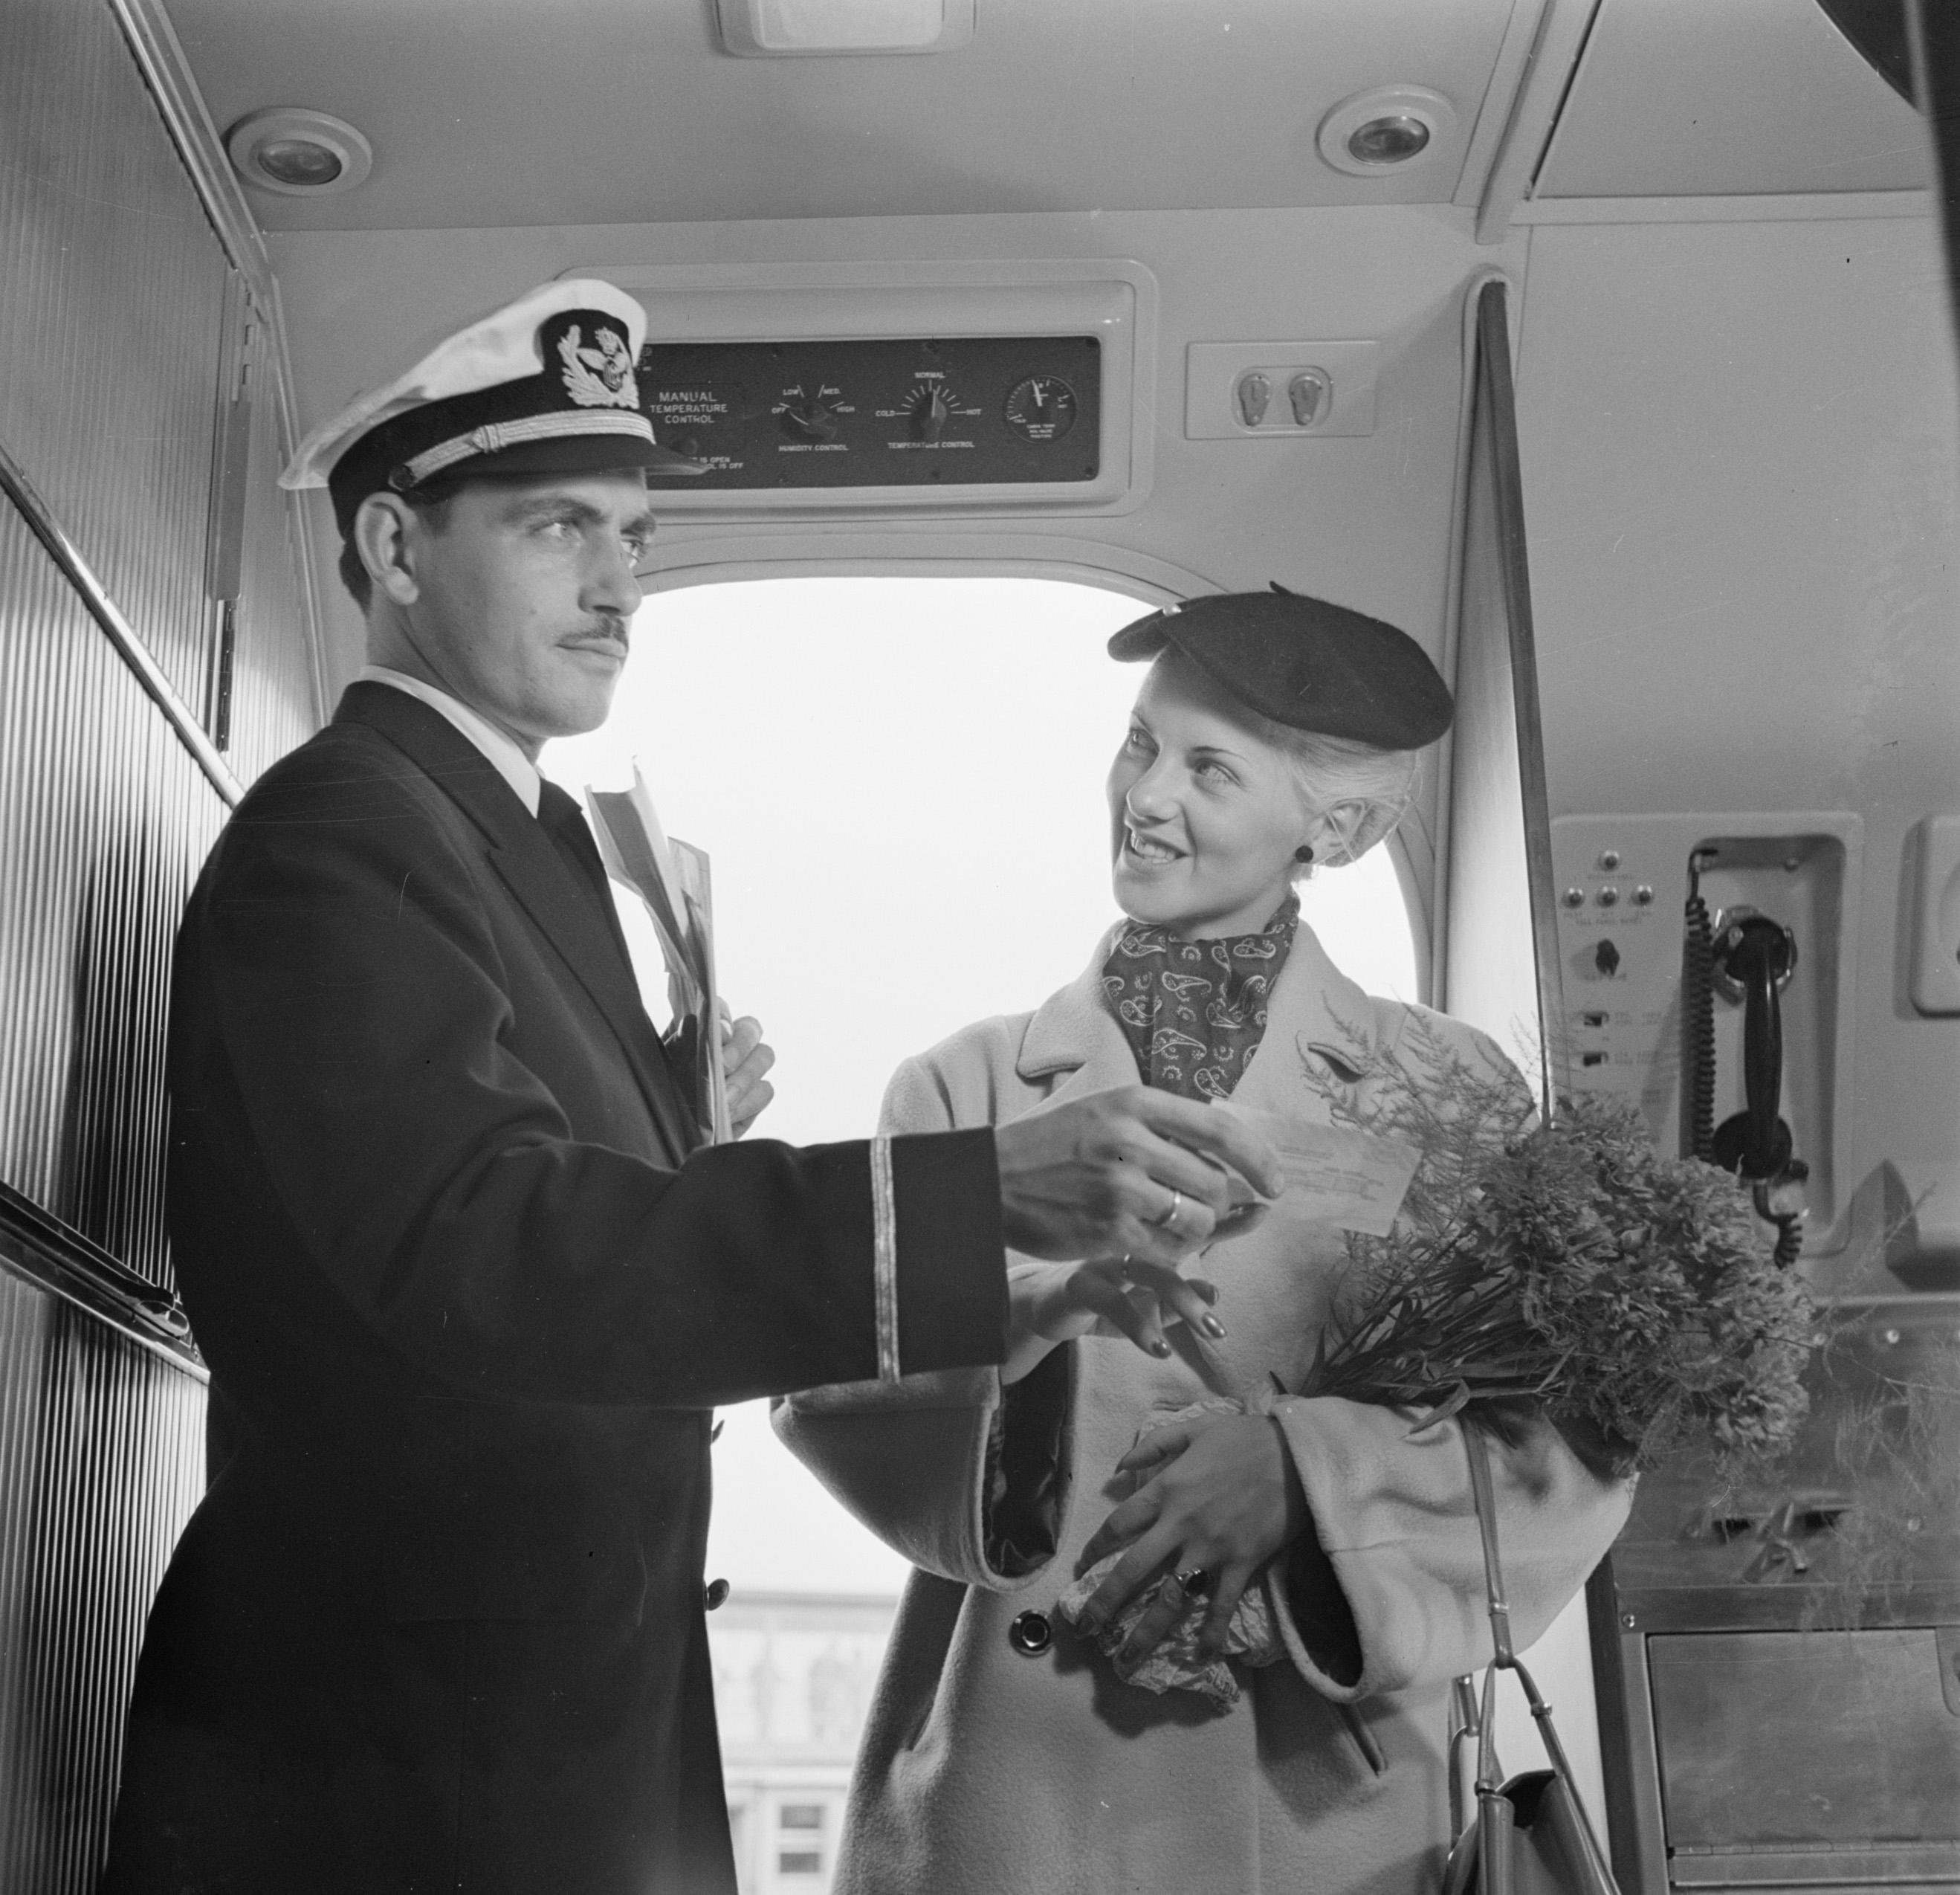 Een KLM-purser verwelkomt een reiziger in de cabine en duidt haar de zitplaats